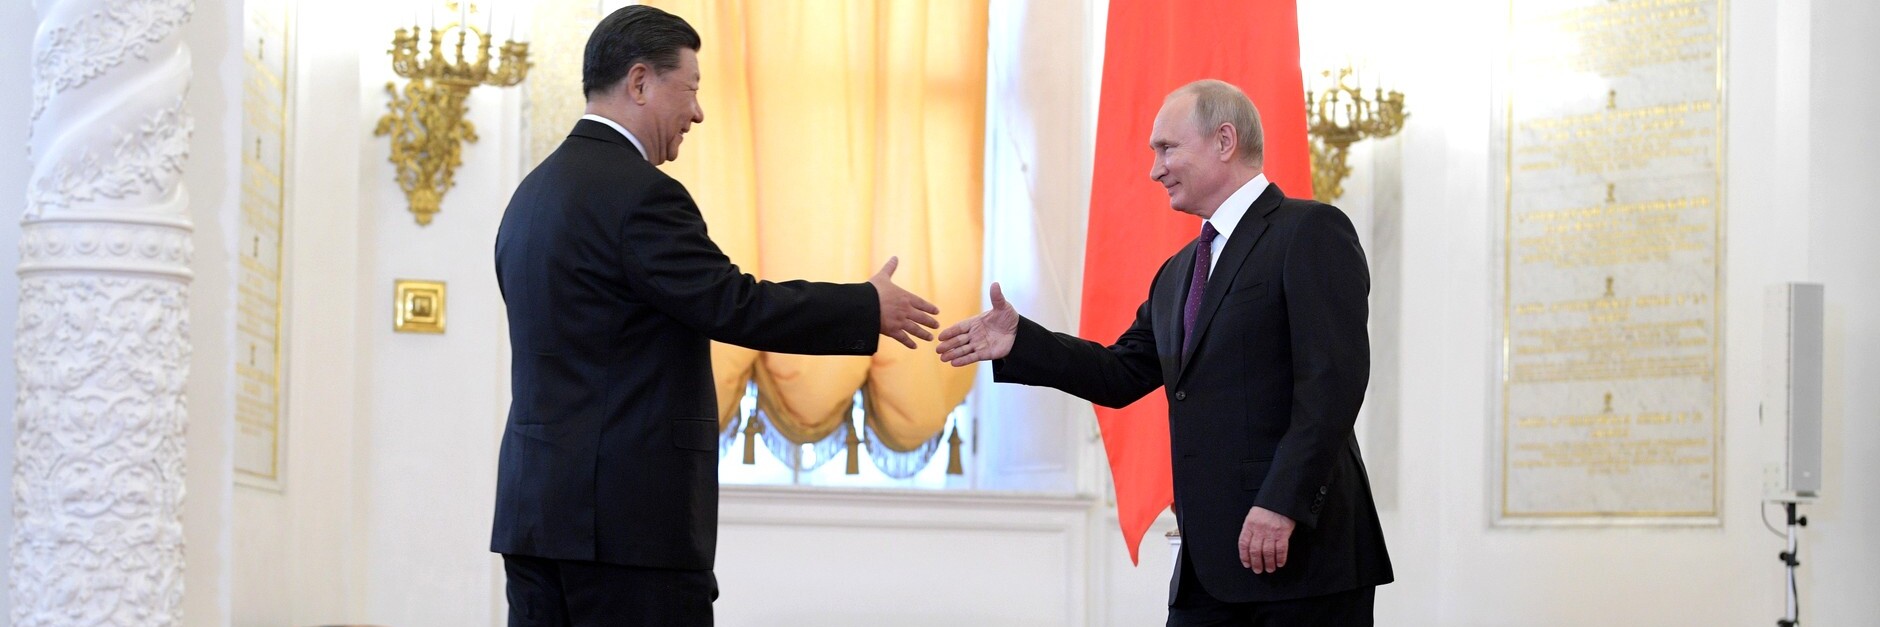 President Xi Jinping shaking hands with Vladimir Putin